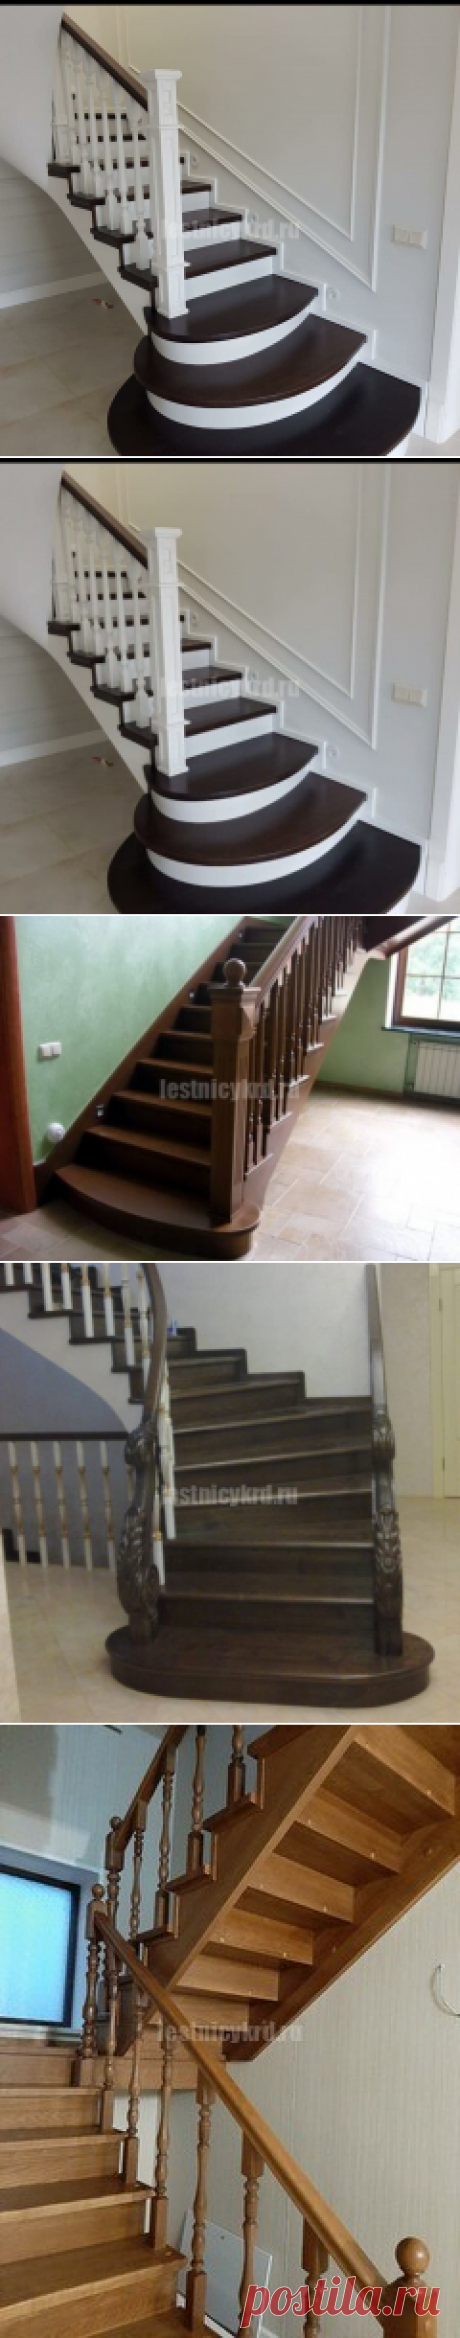 Деревянные премиум лестницы - Лестницы Краснодара